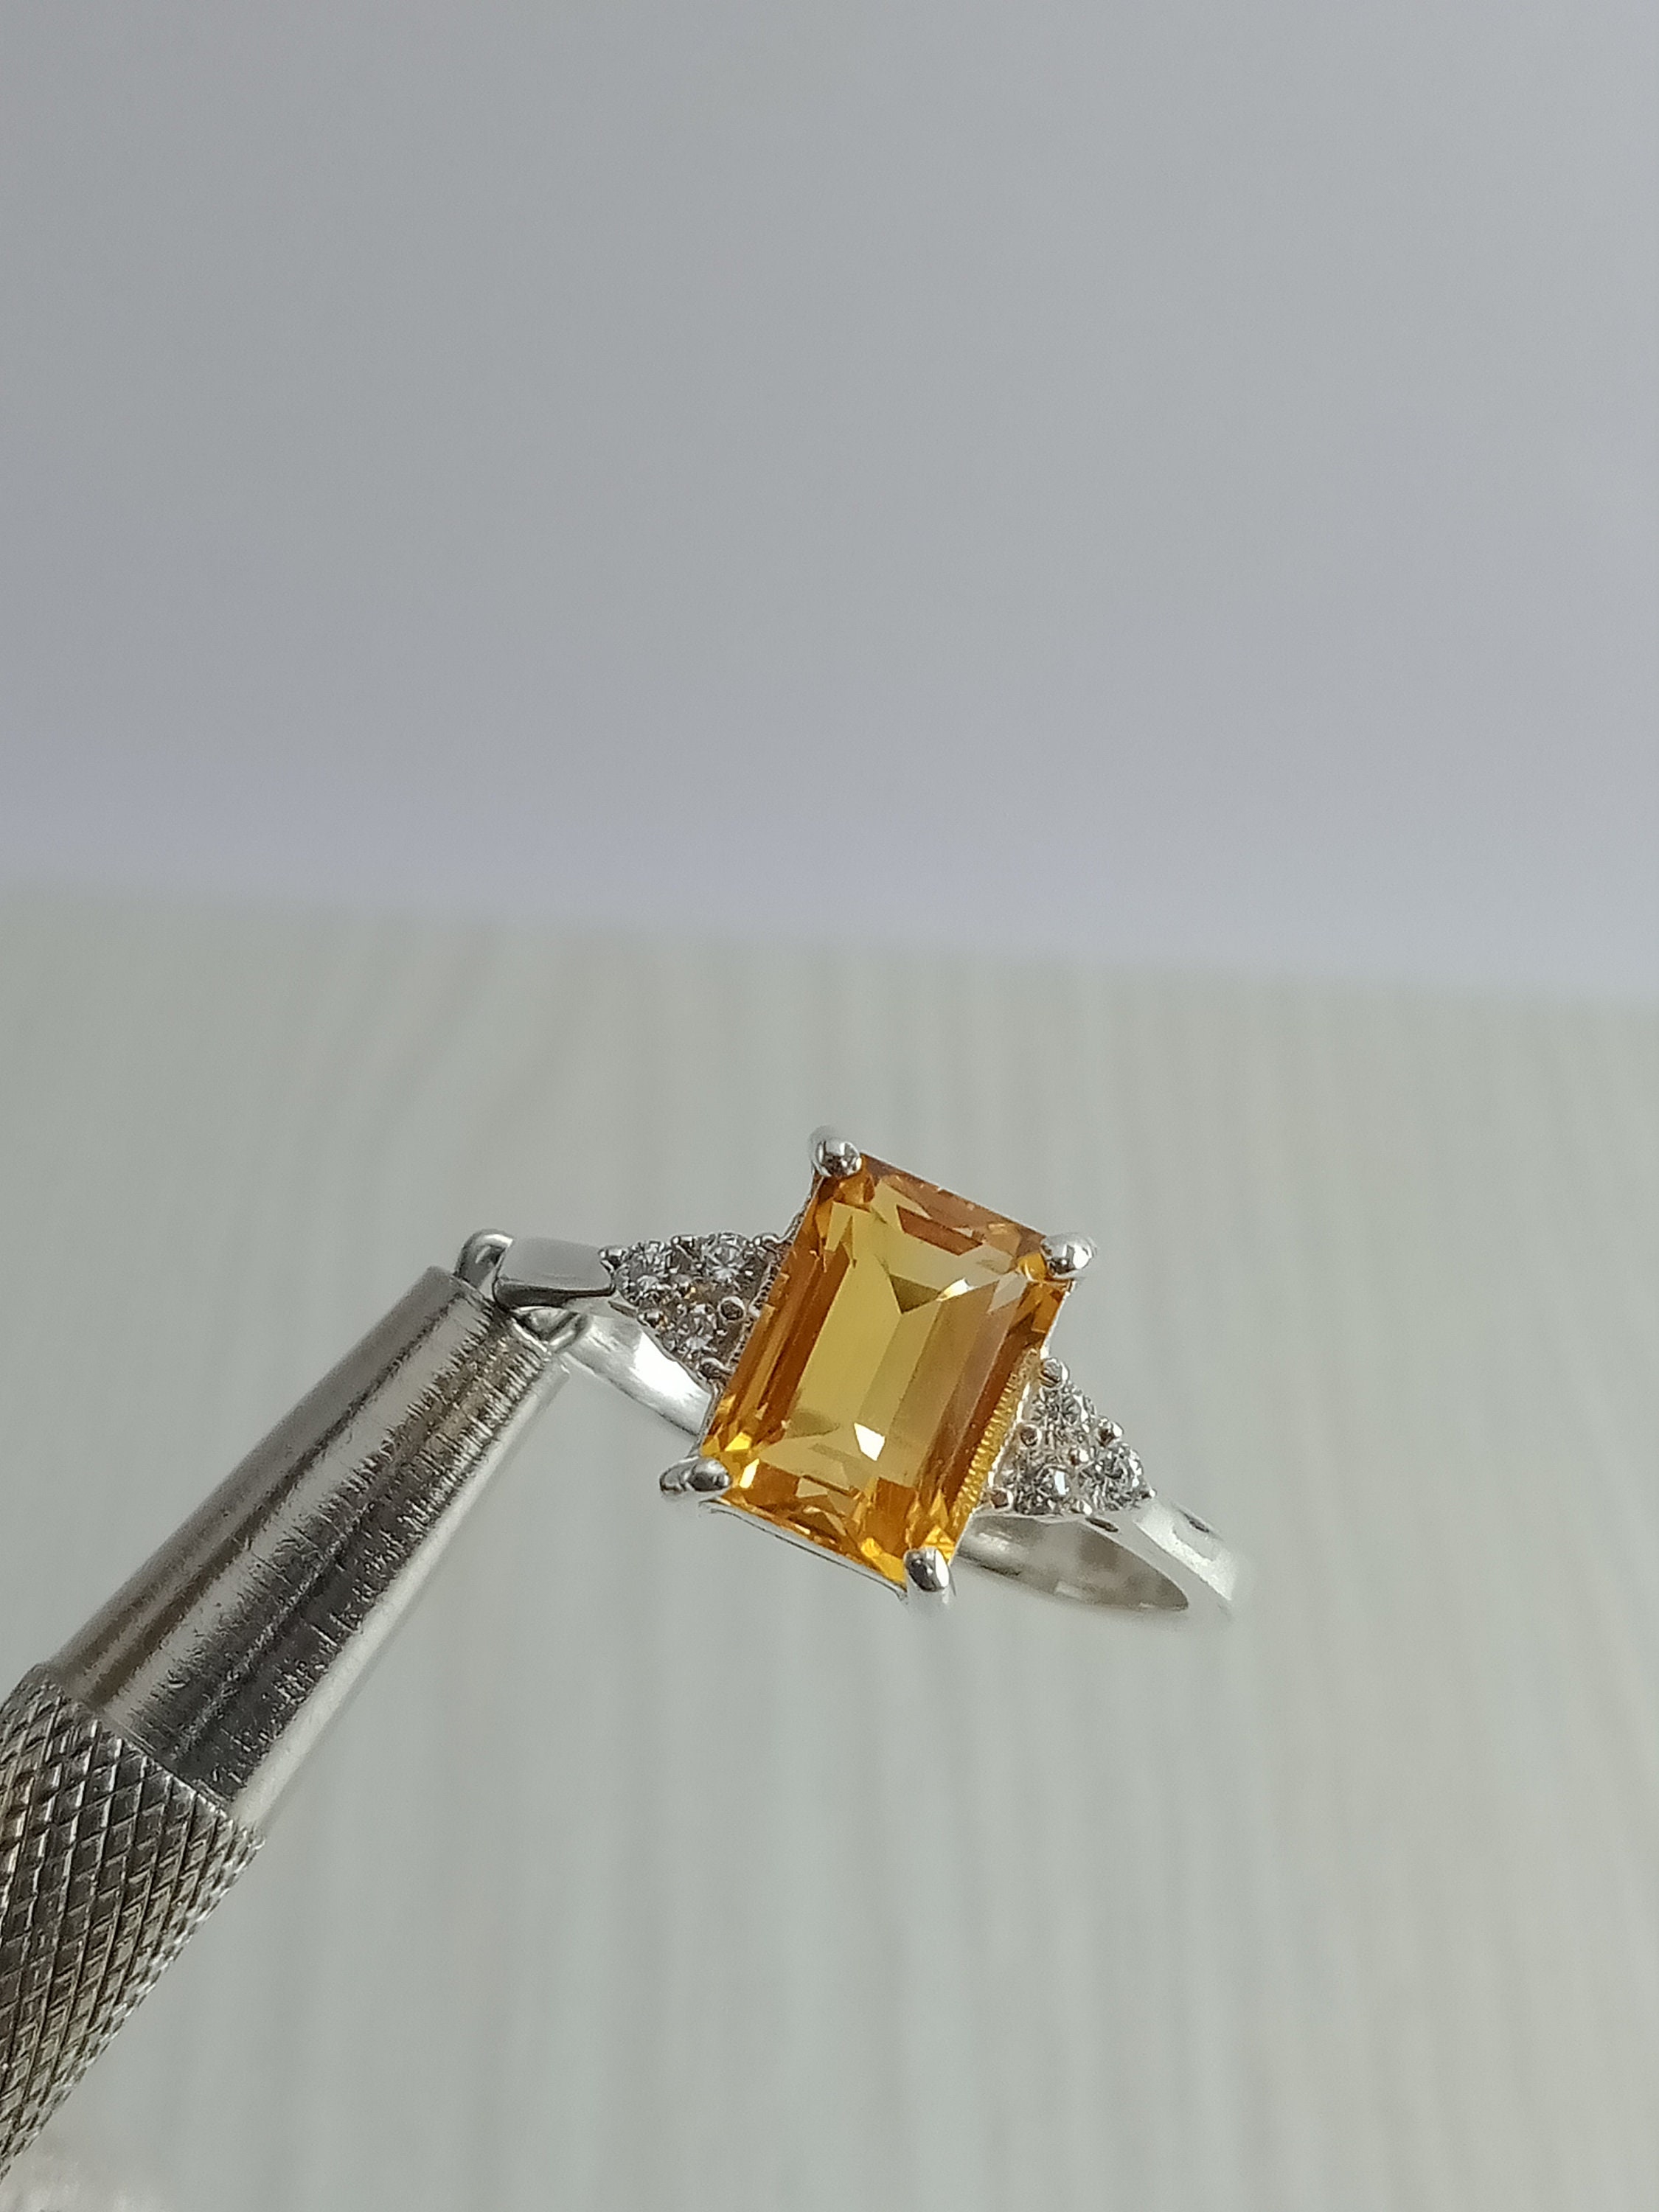 Buy Vintage Golden Topaz Ring-yellow Topaz Ring-golden Stone Ring-birthstone  Topaz Ring-natural Golden Topaz Gemstone Ring-promise Ring Online in India  - Etsy